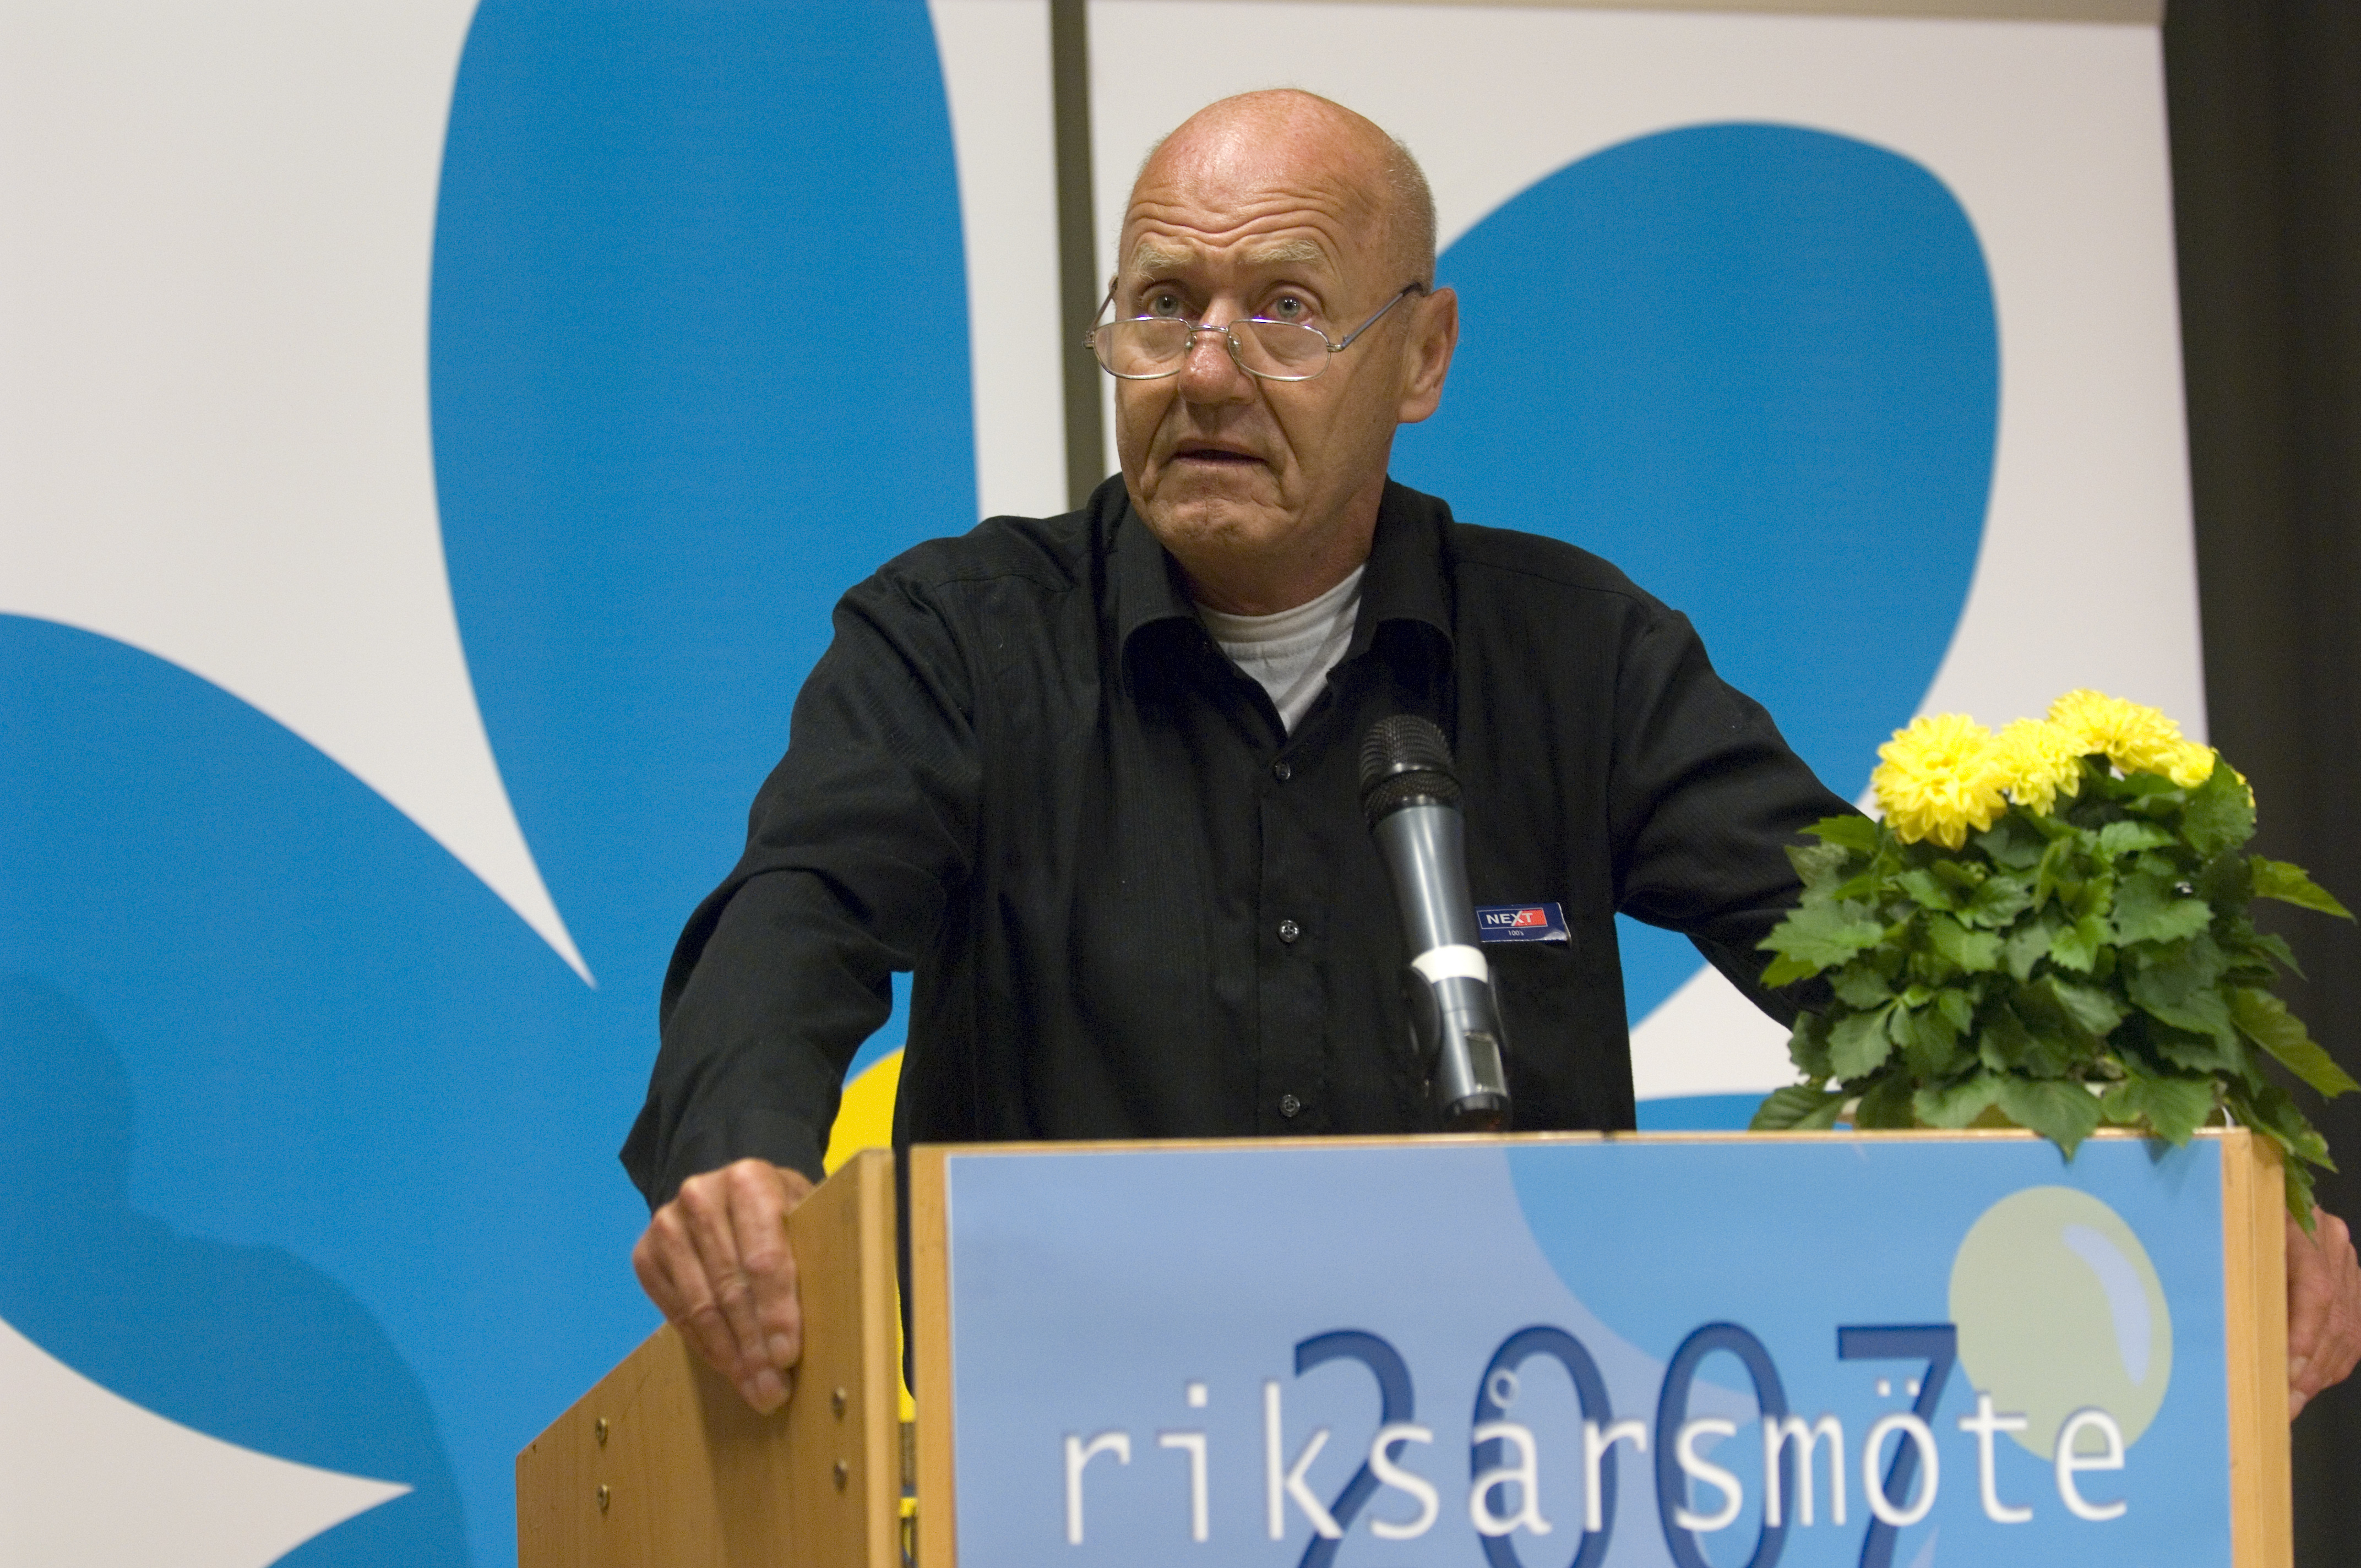 Avlidit, Riksdagsvalet 2010, Död, Moderaterna, Sverigedemokraterna, Avliden, Sten Andersson